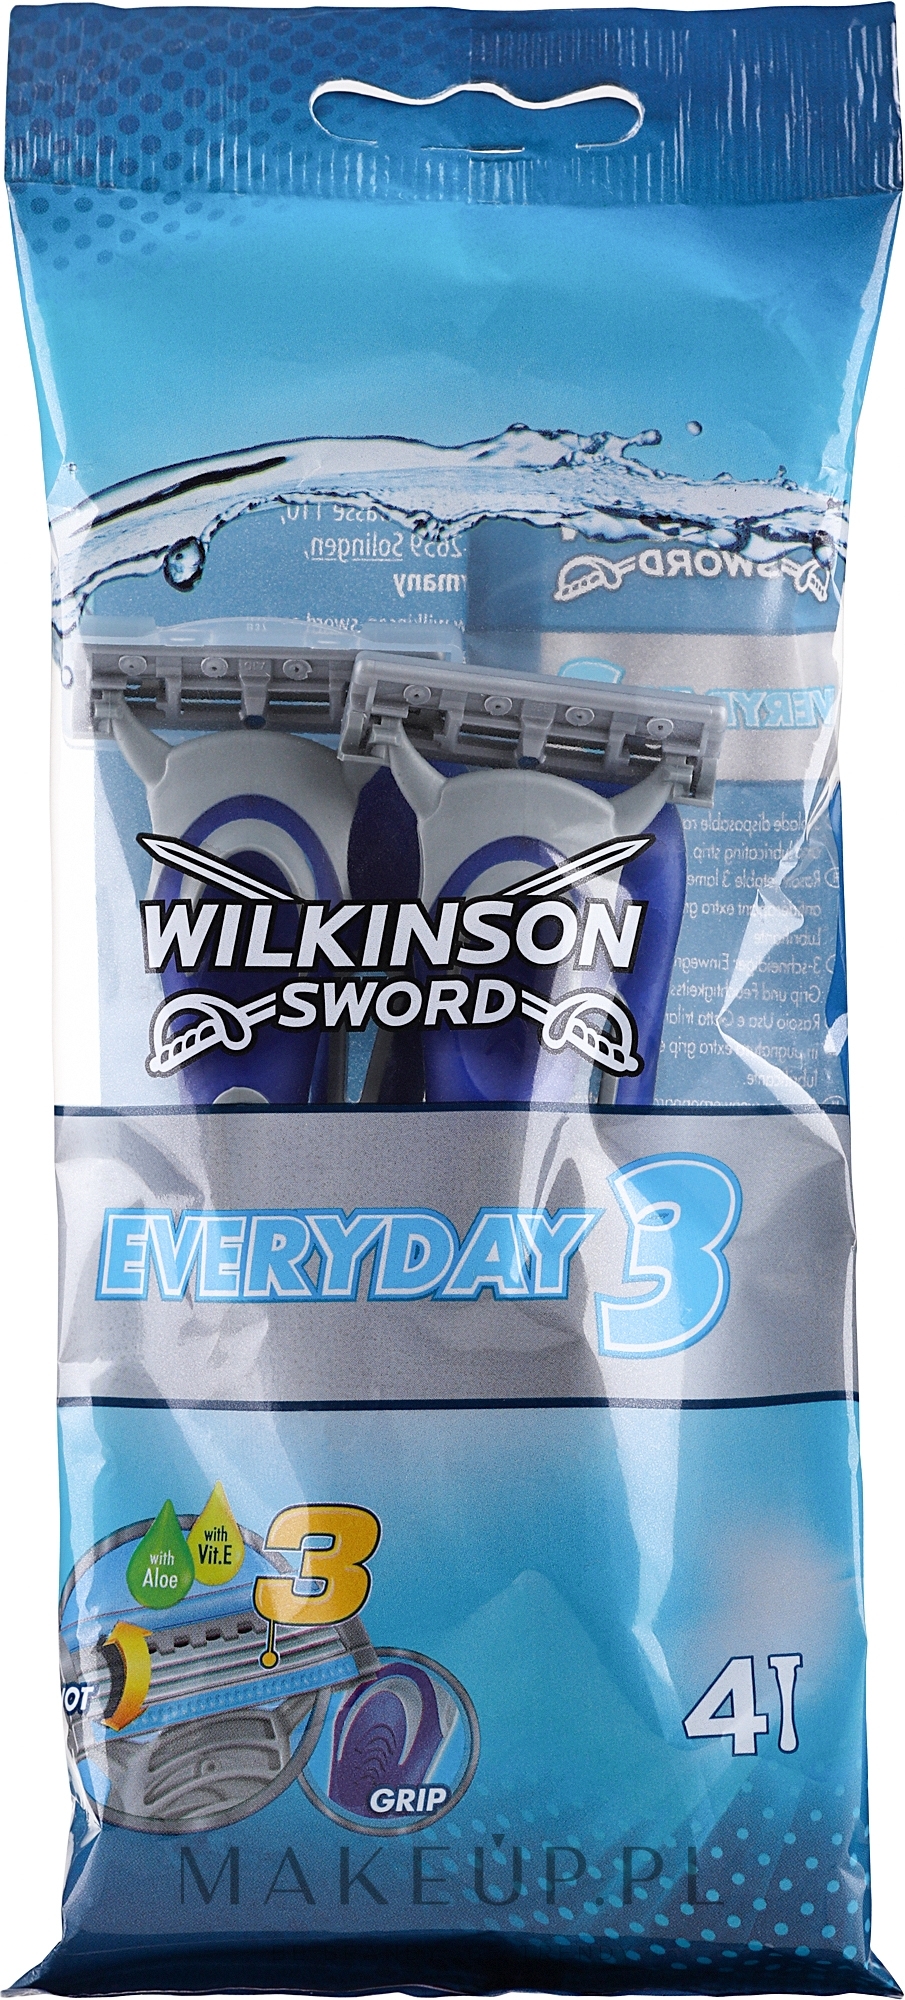 Jednorazowe maszynki do golenia, 4 szt. - Wilkinson Sword Everyday 3 Men — Zdjęcie 4 szt.